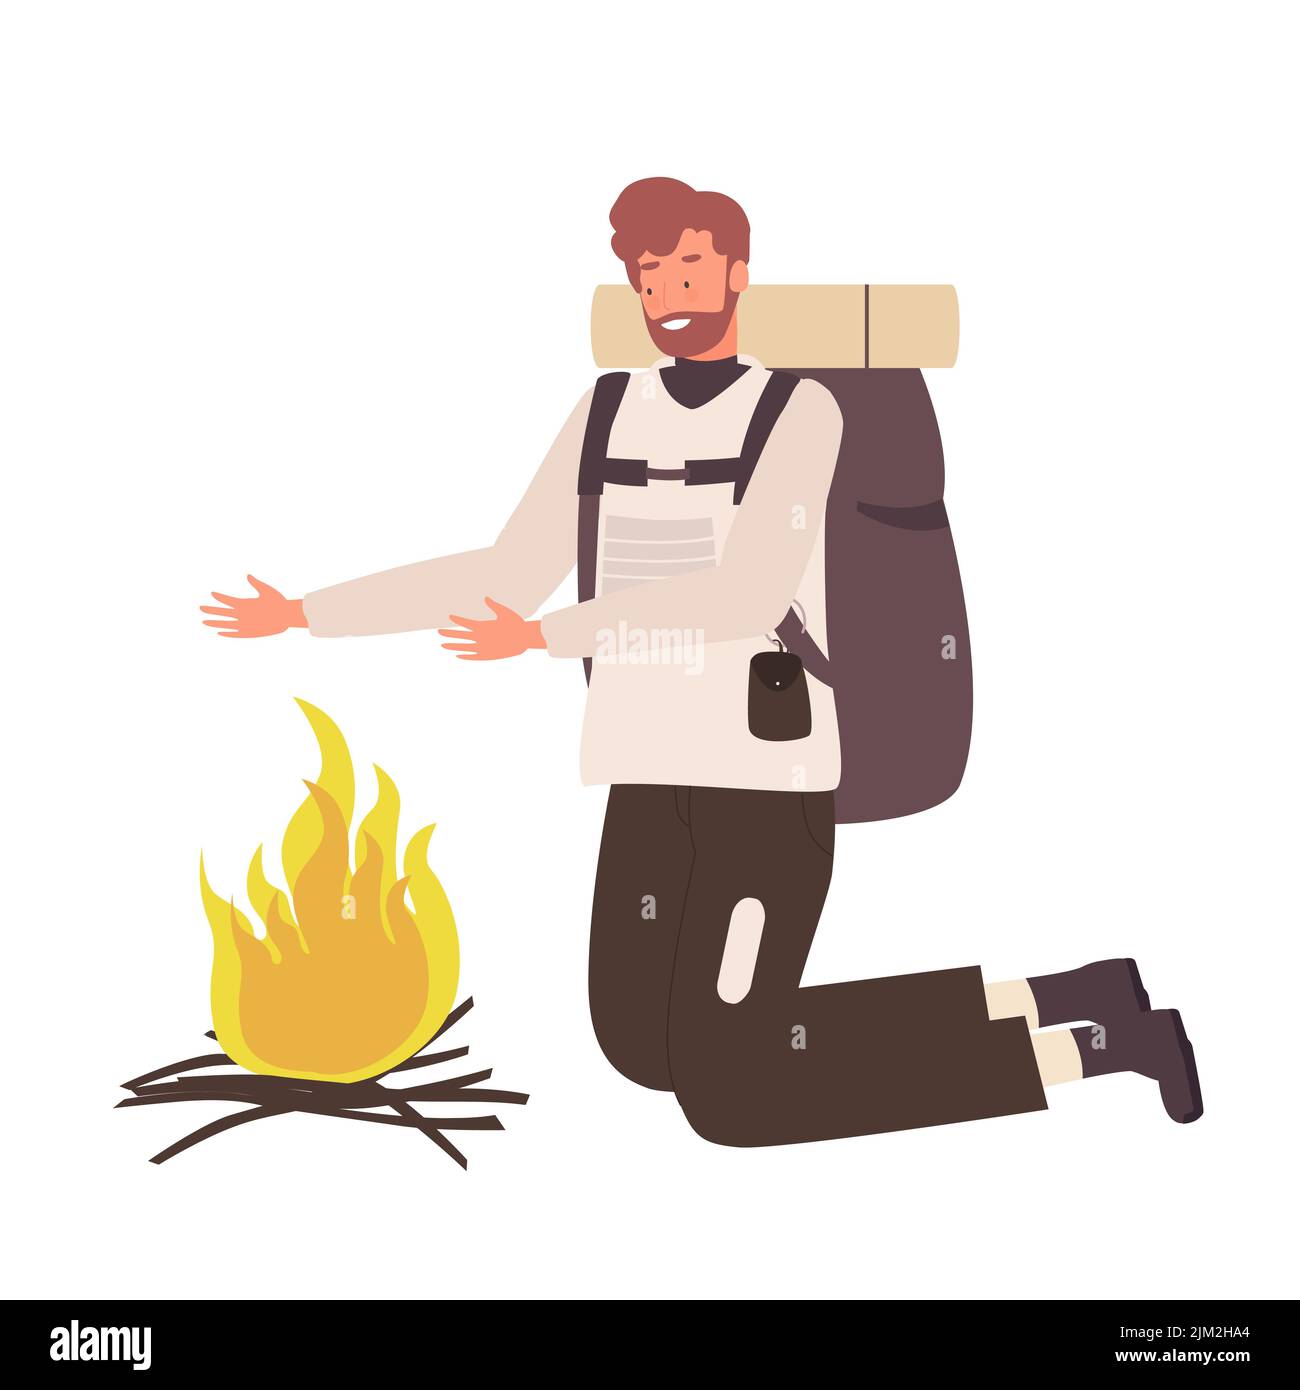 Männlicher Tourist am brennenden Lagerfeuer. Wanderer Mann mit Rucksack, Outdoor-Camping-Vektor-Illustration Stock Vektor